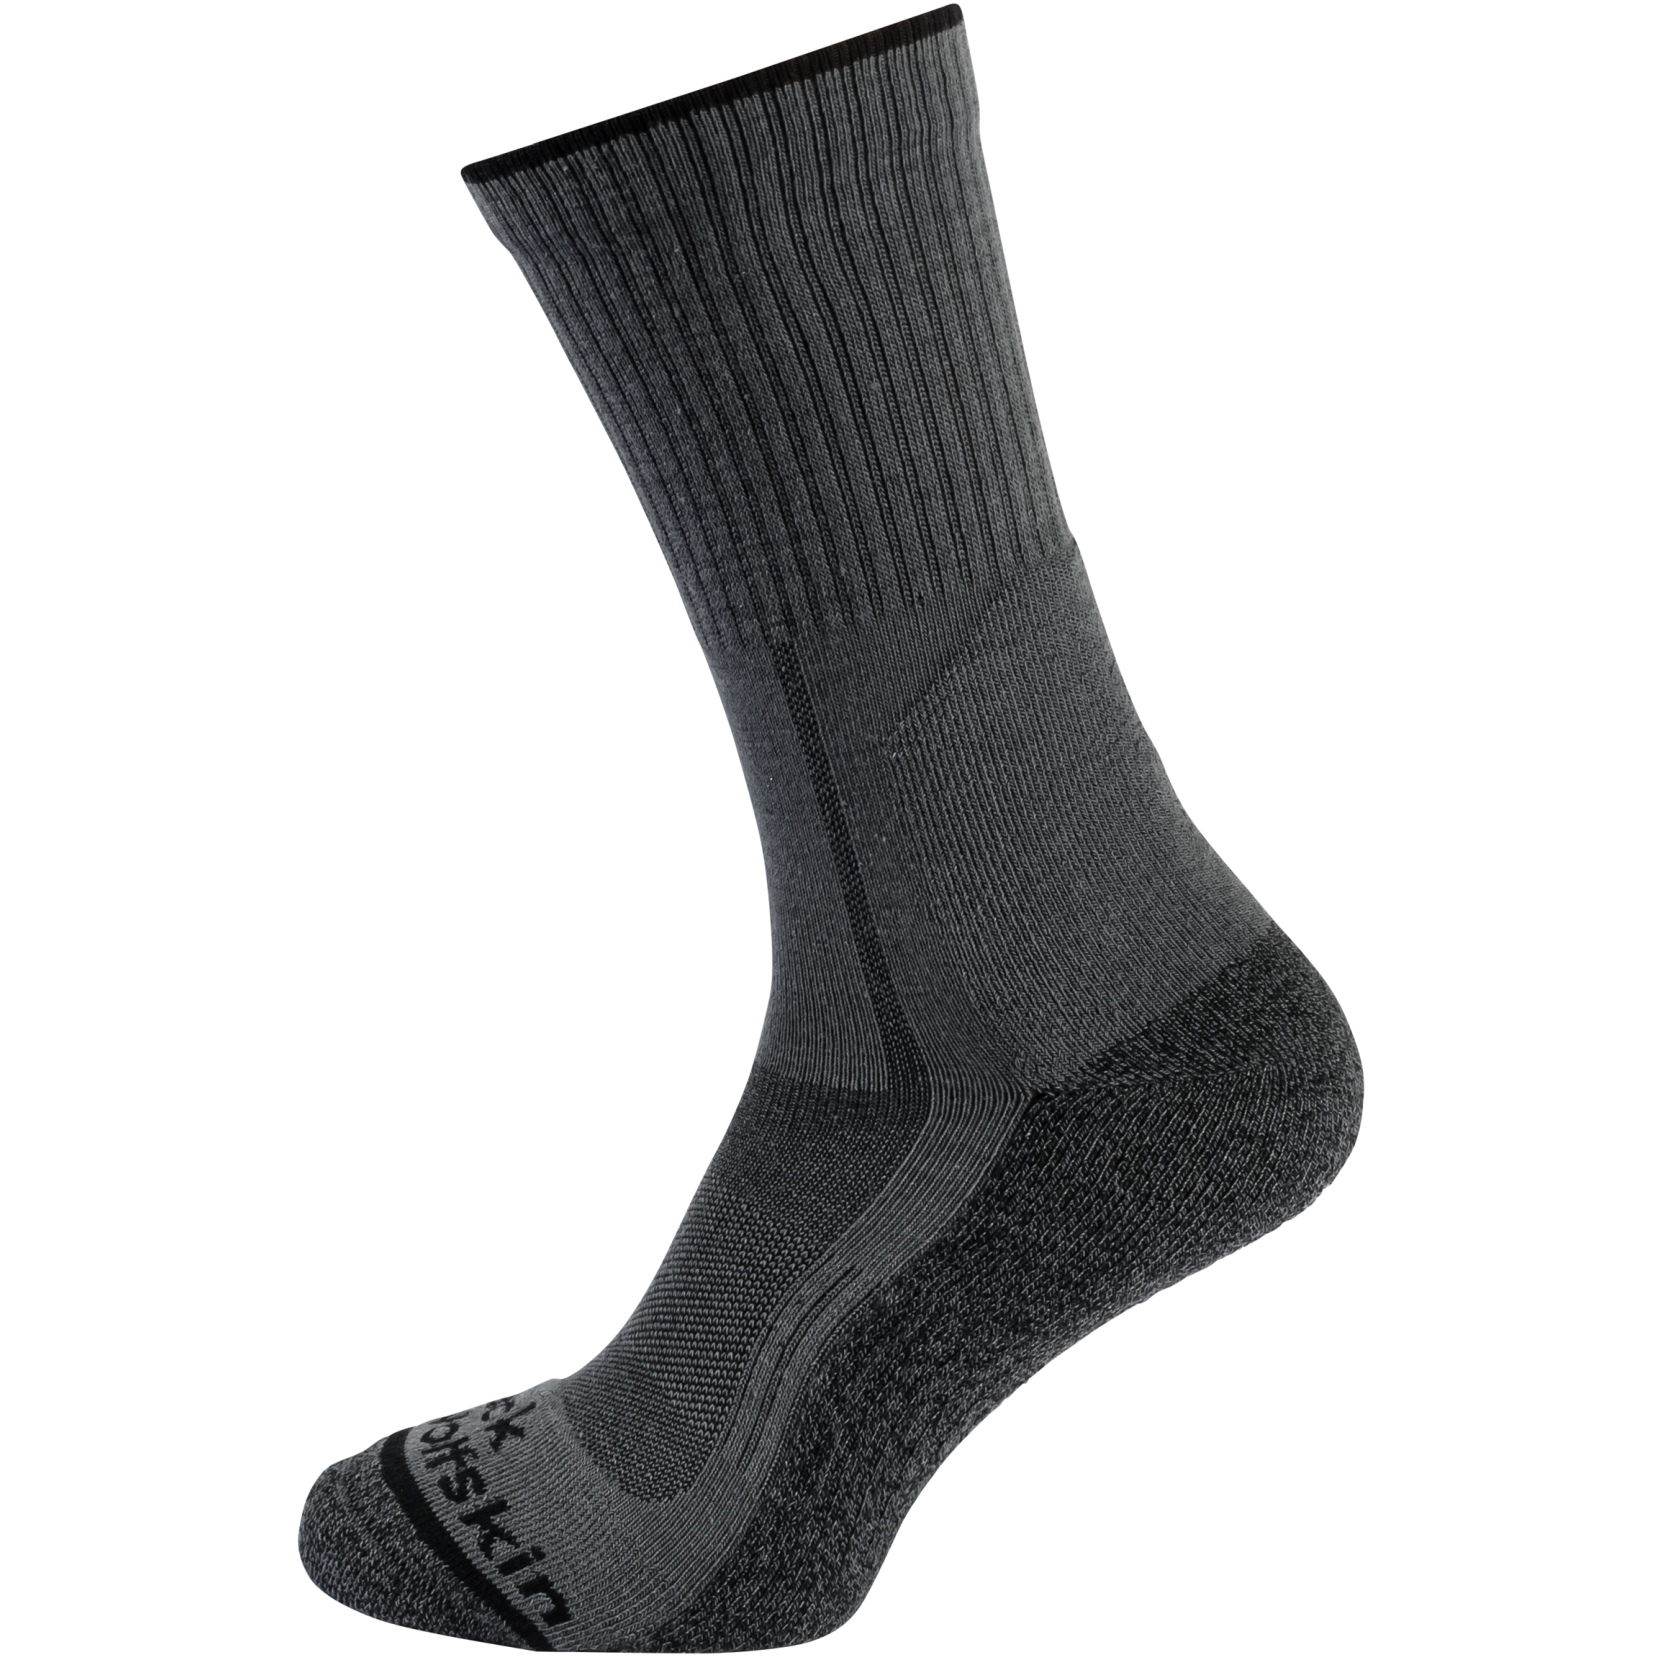 Bild von Jack Wolfskin Hike Function Classic Cut Socken - dark grey